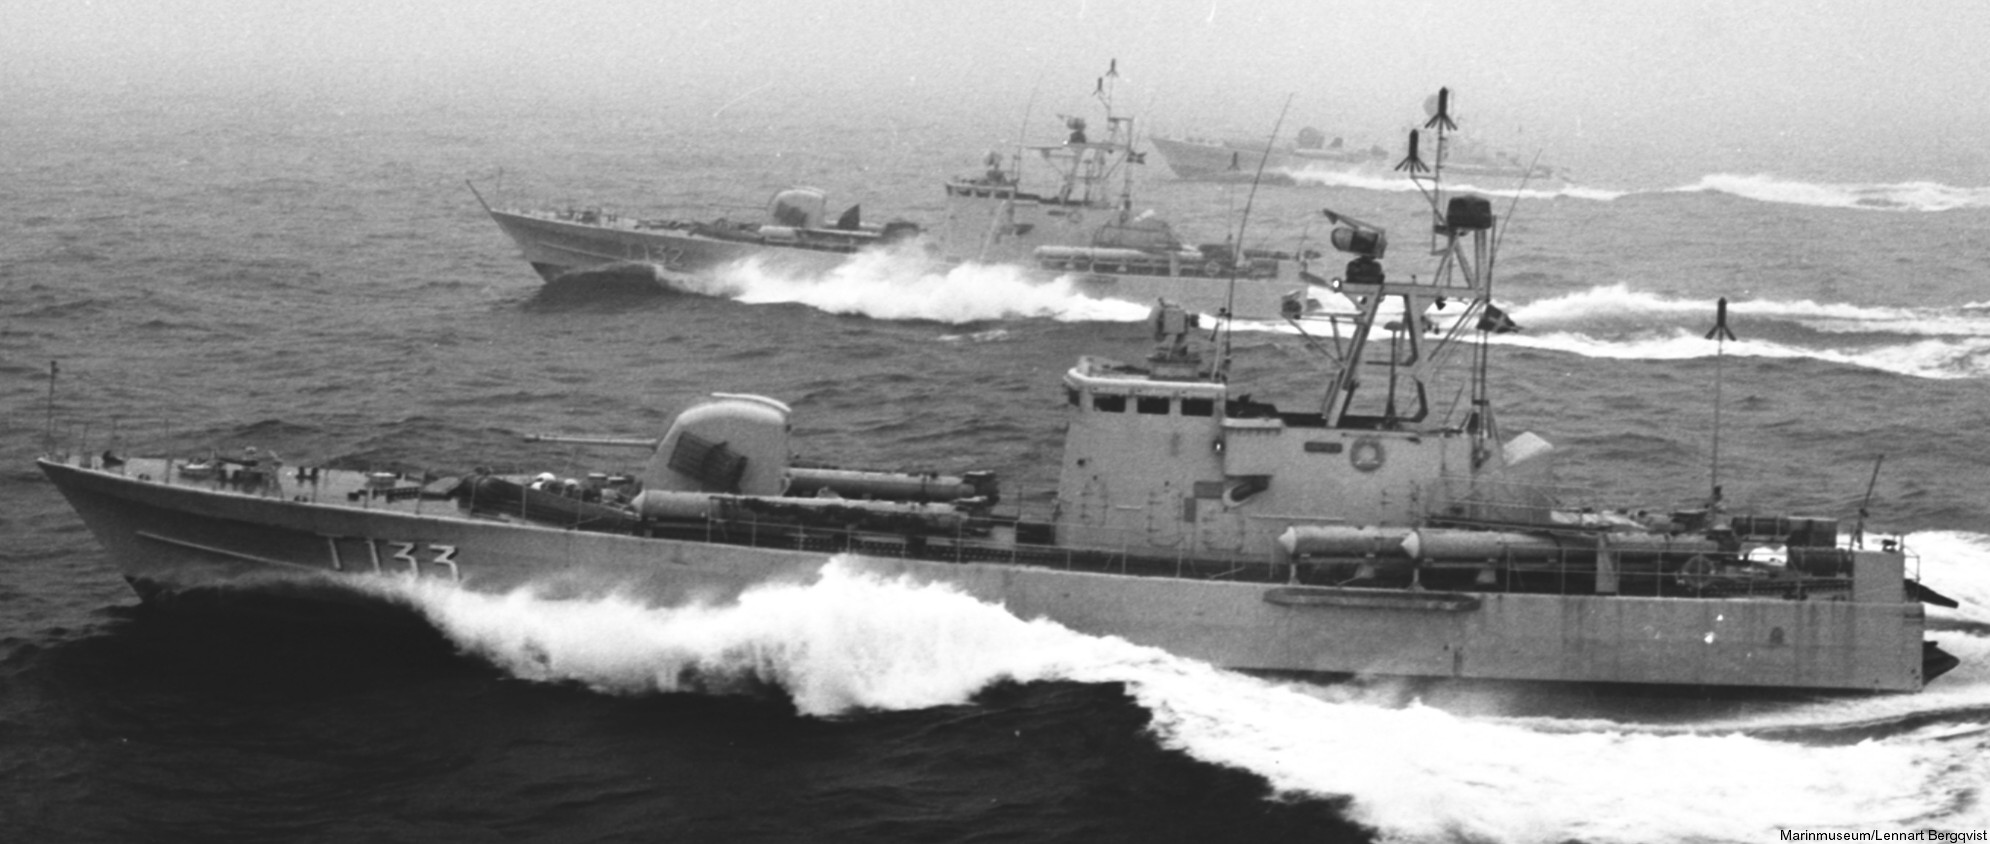 t133 norrtälje hswms hms norrköping class fast attack craft torpedo missile patrol boat swedish navy svenska marinen 06